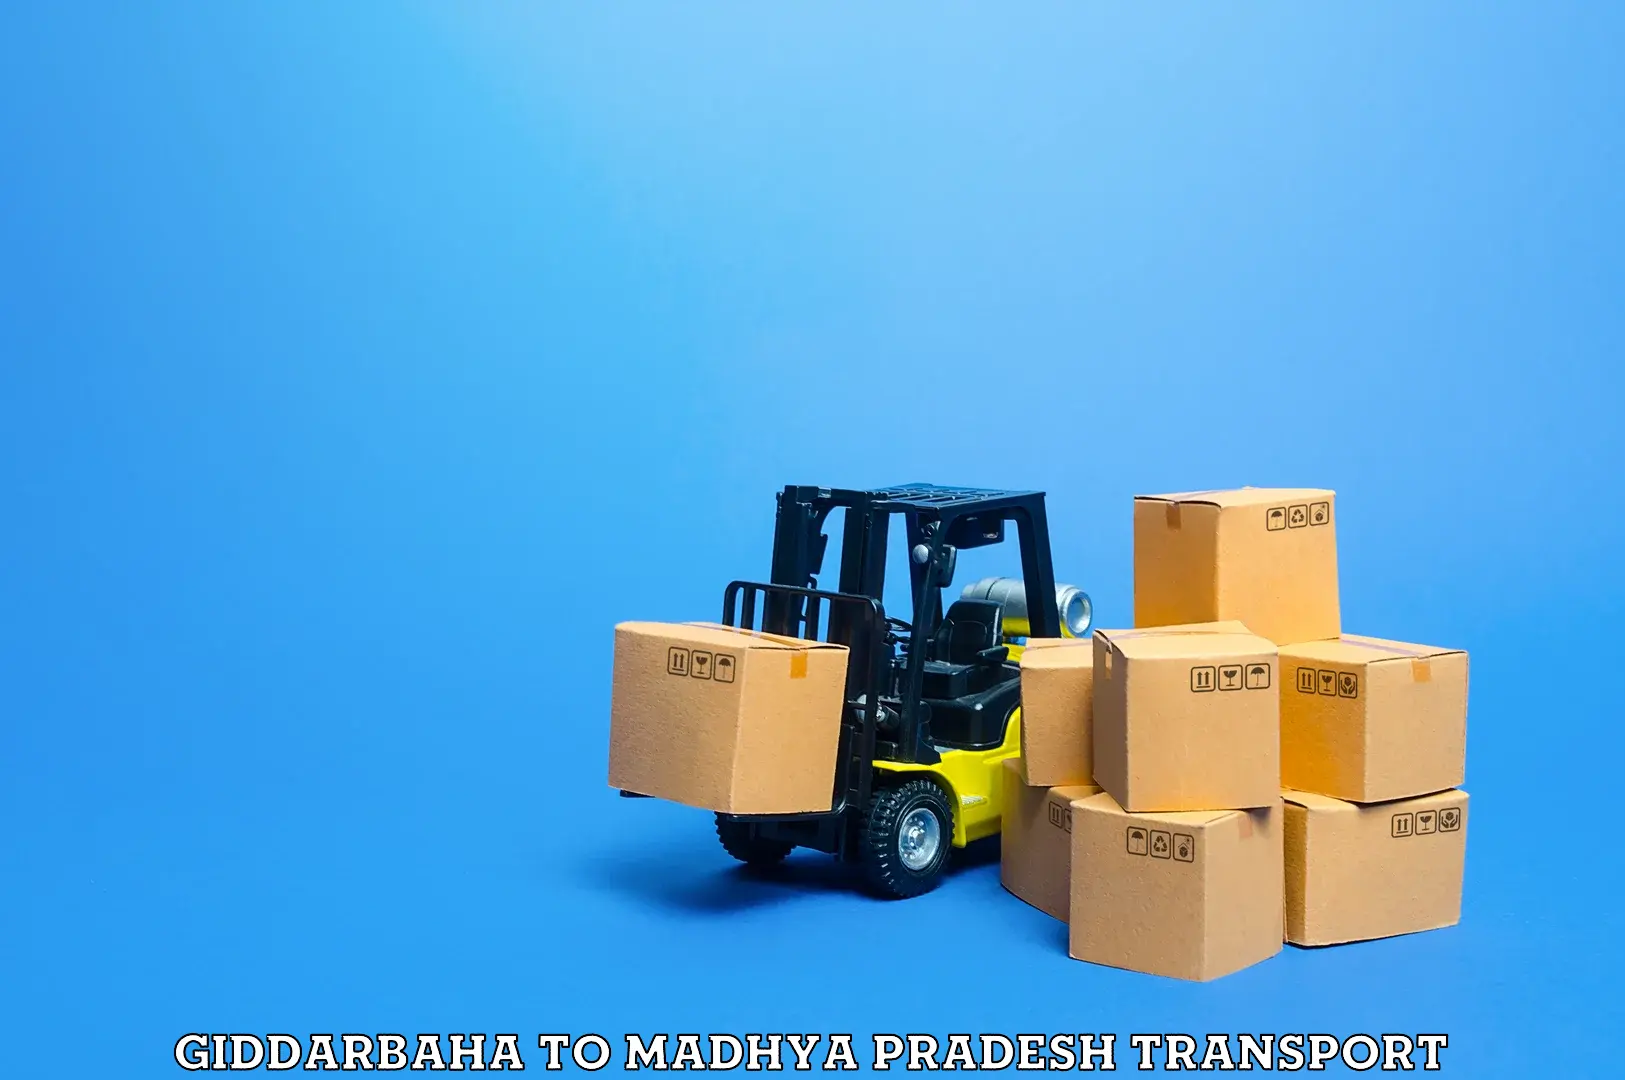 Daily parcel service transport Giddarbaha to Khajuraho